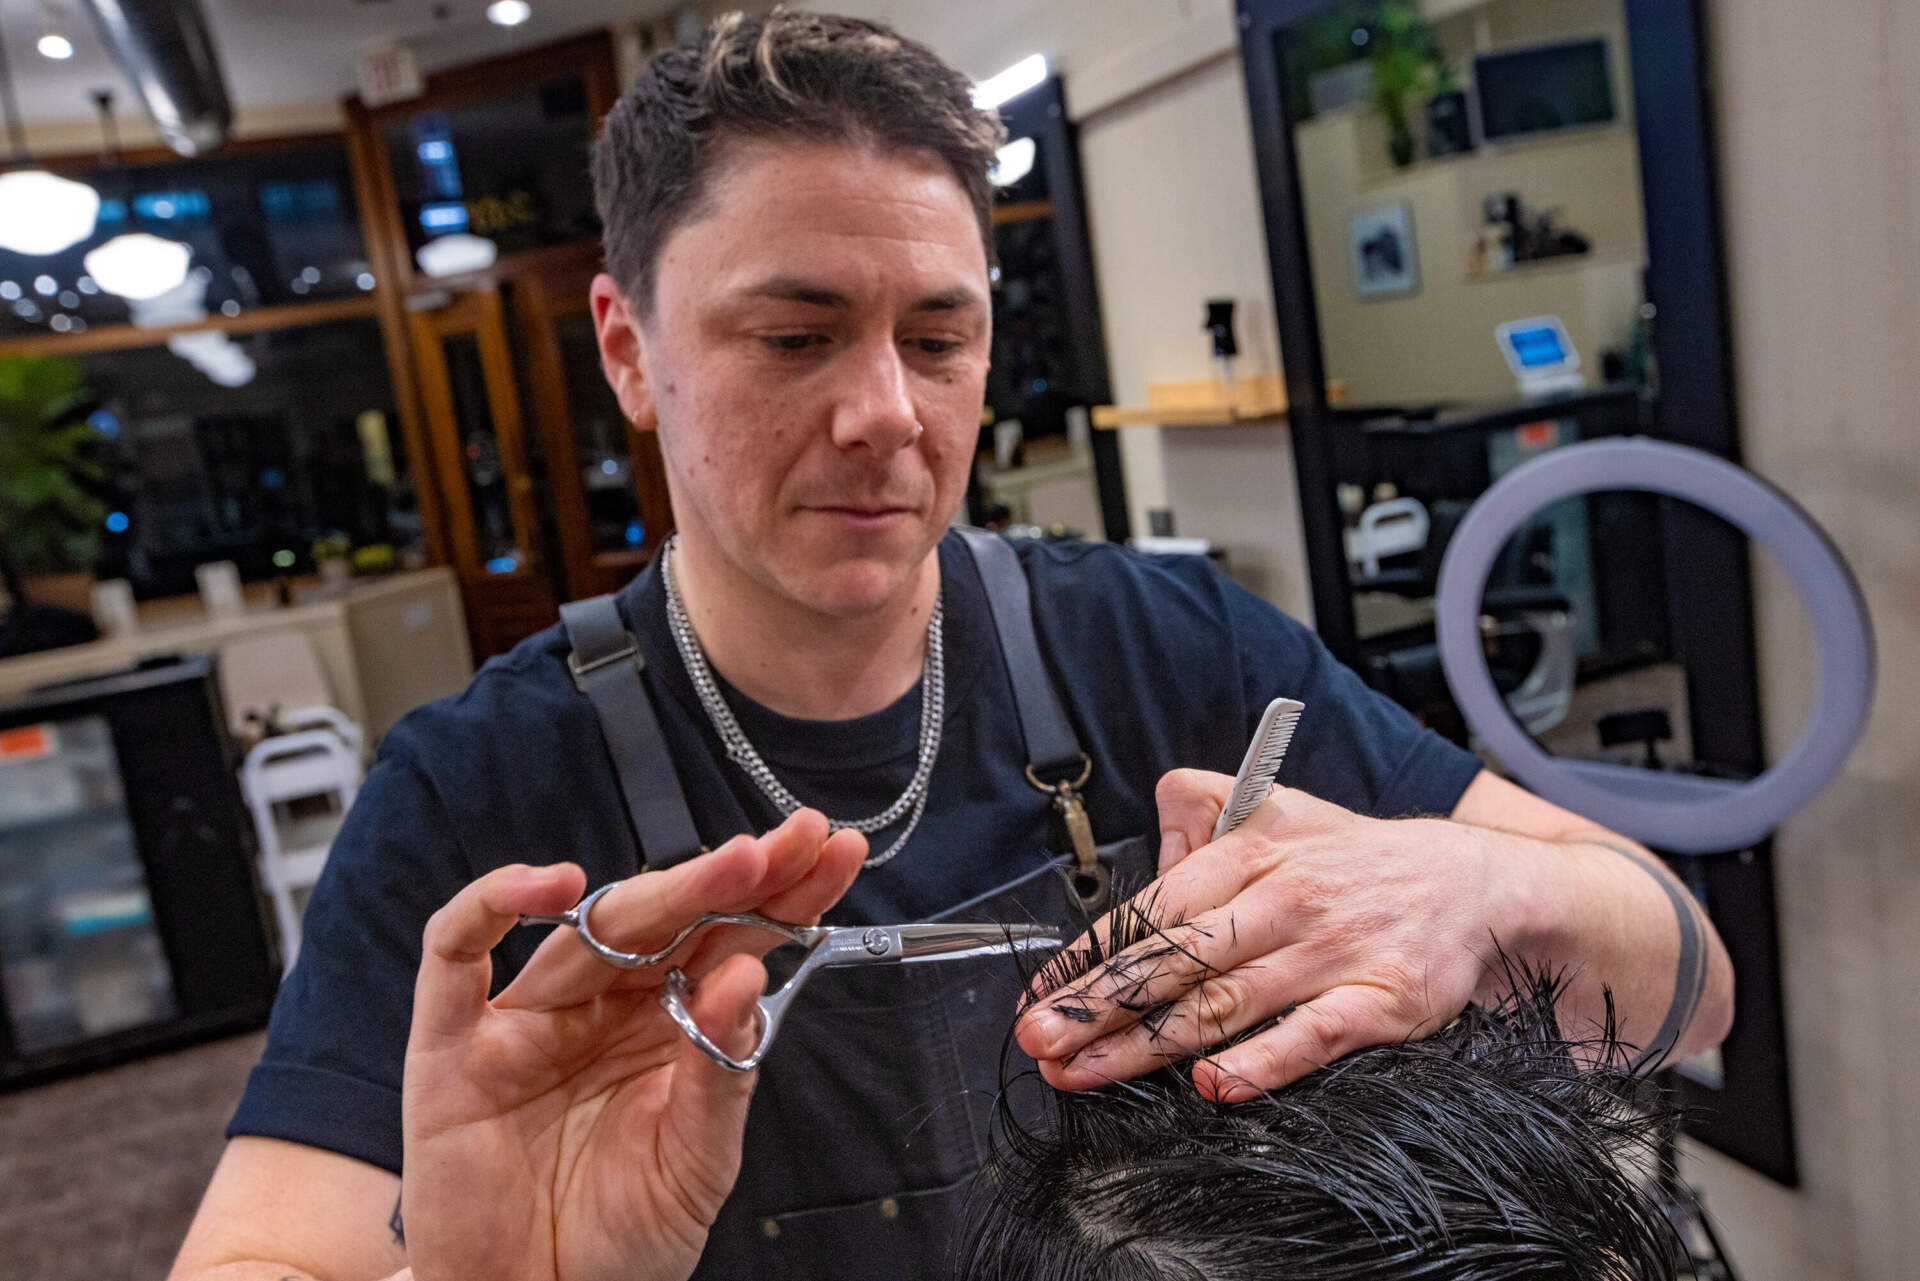 M Arida uses scissors to trim Aaron Chio’s hair. (Jesse Costa/WBUR)